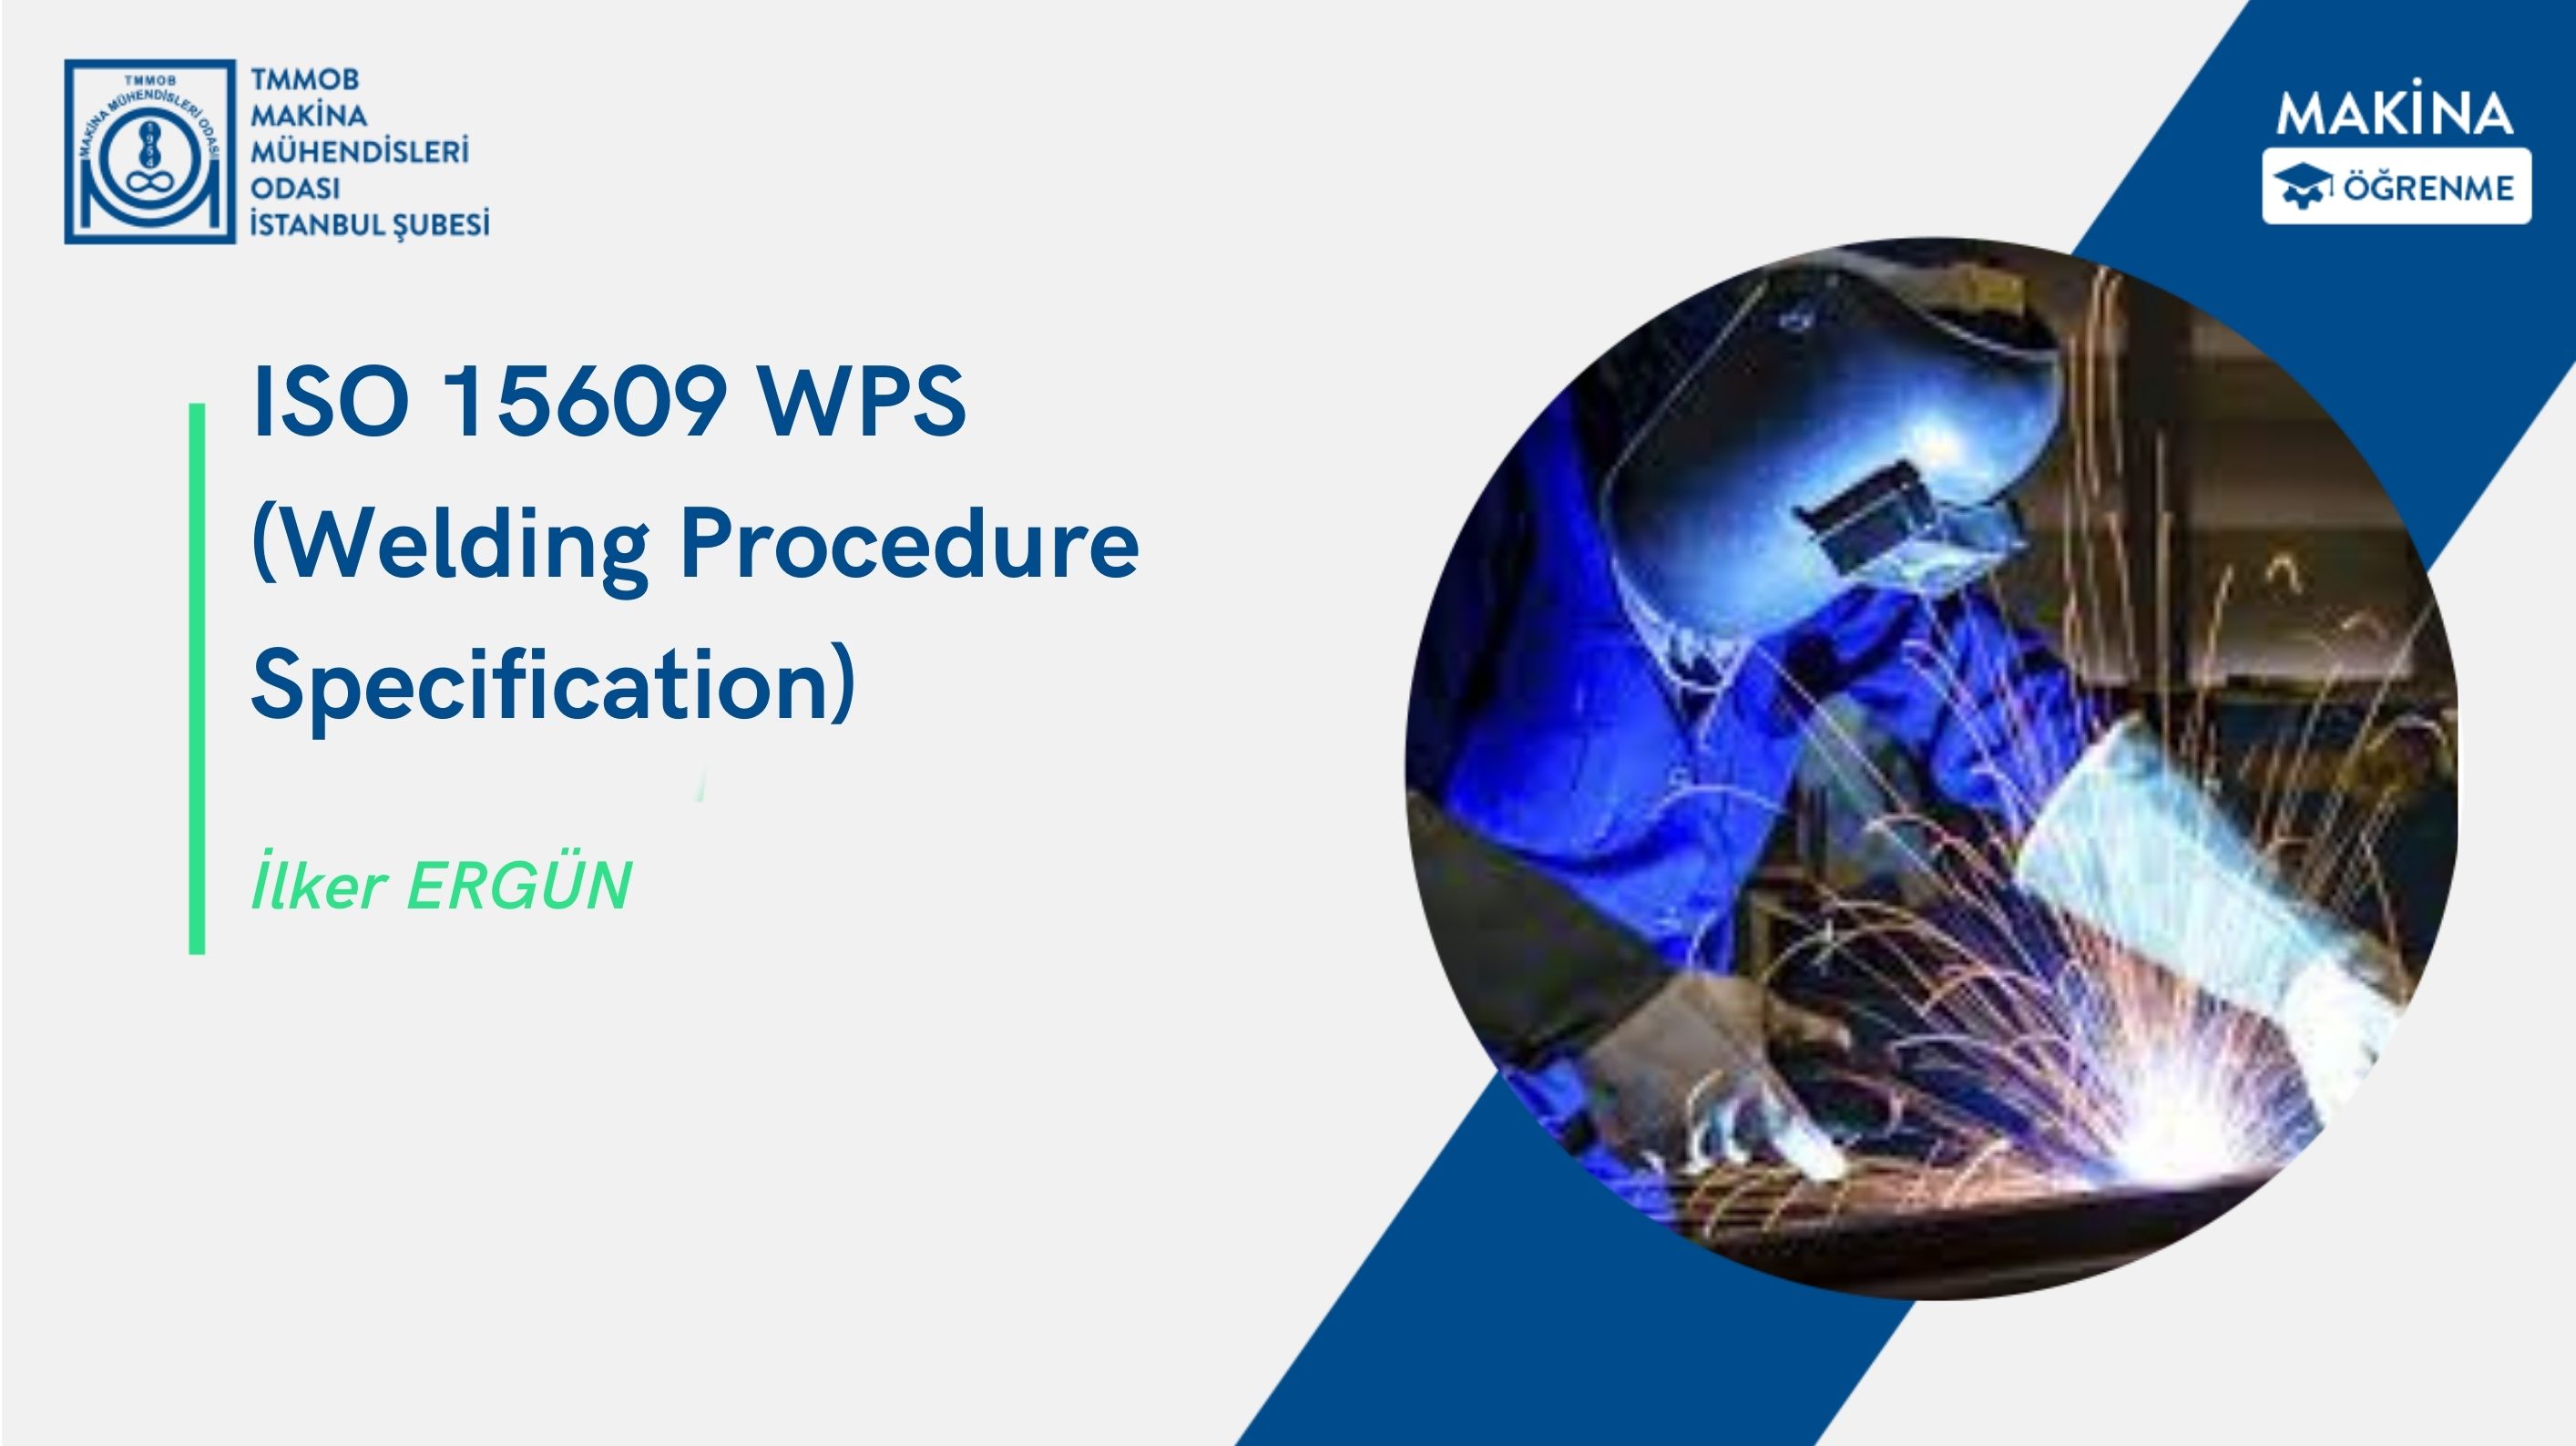 ISO 15609 WPS (Welding Procedure Specification)